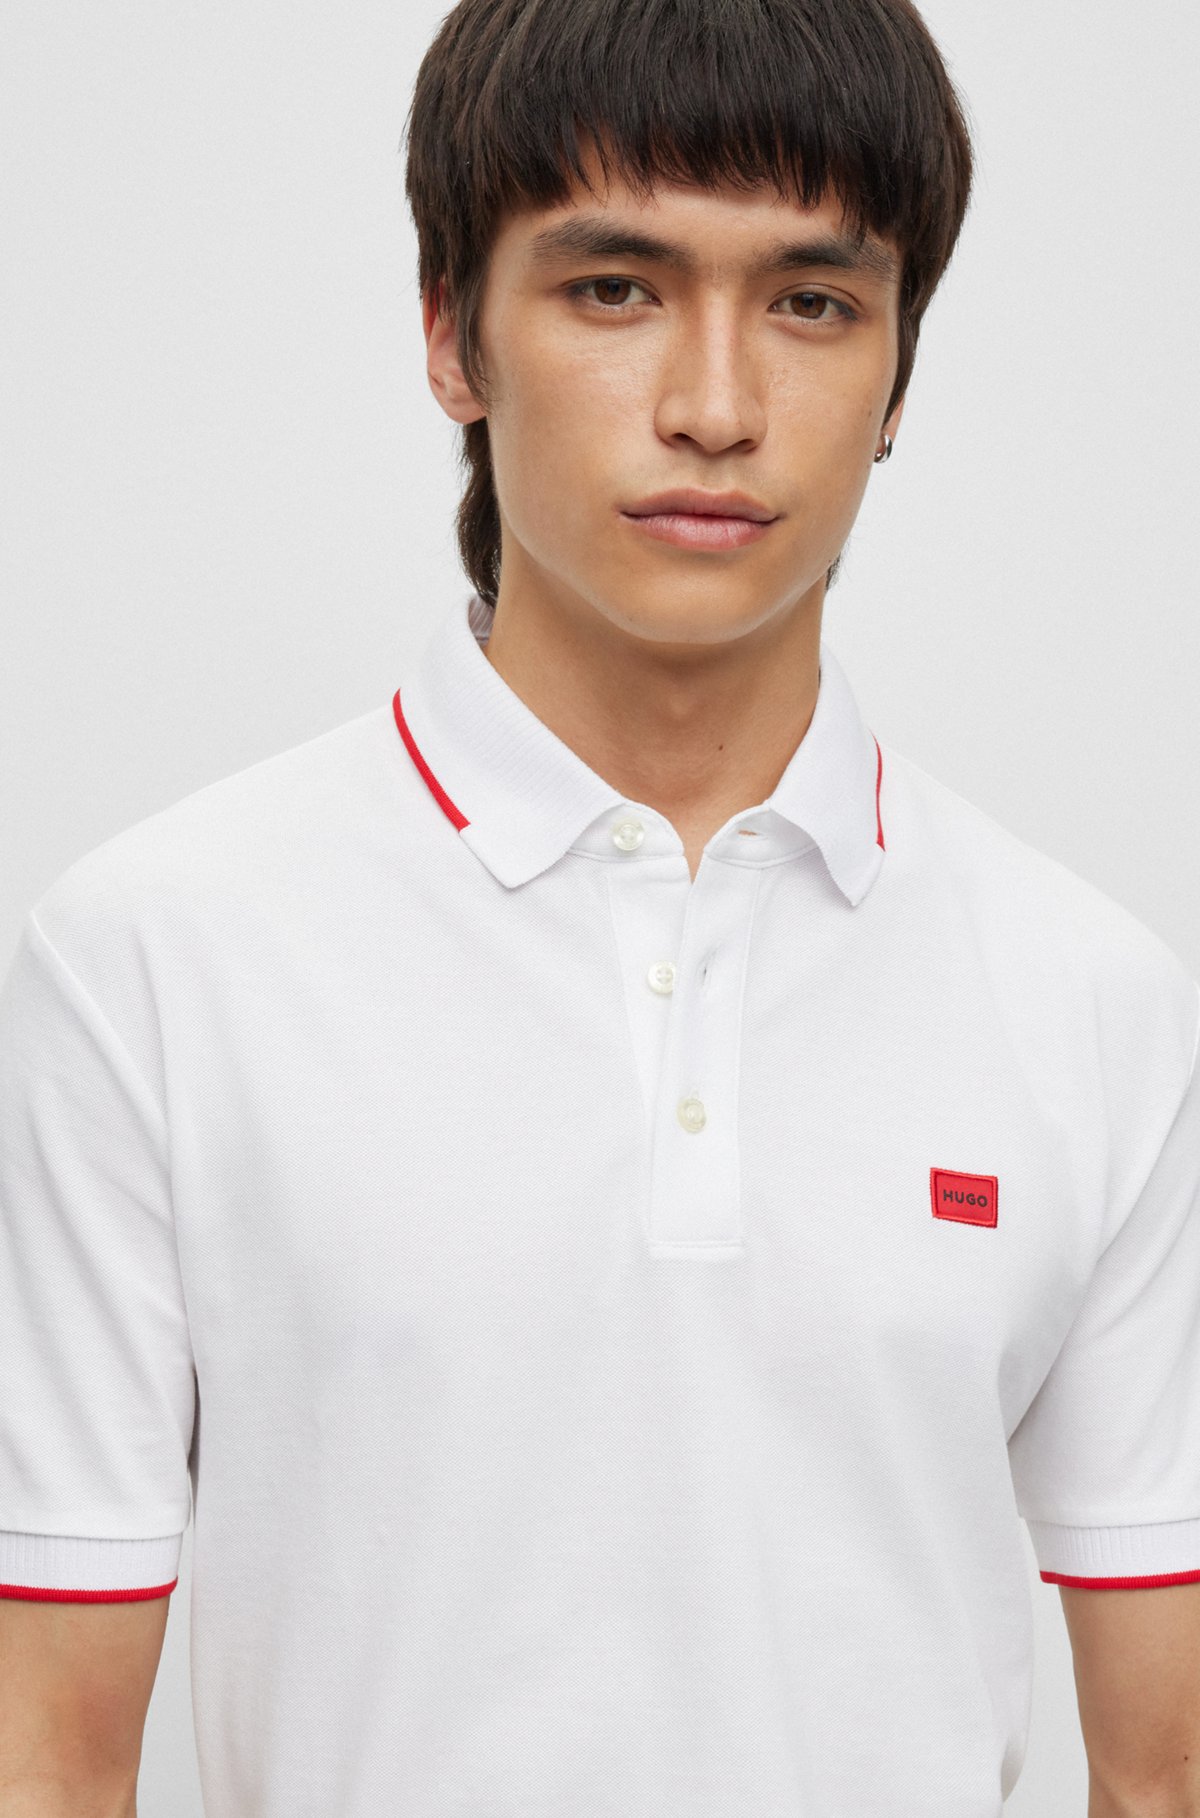 Polo Slim en piqué de coton avec étiquette logotée rouge, Blanc